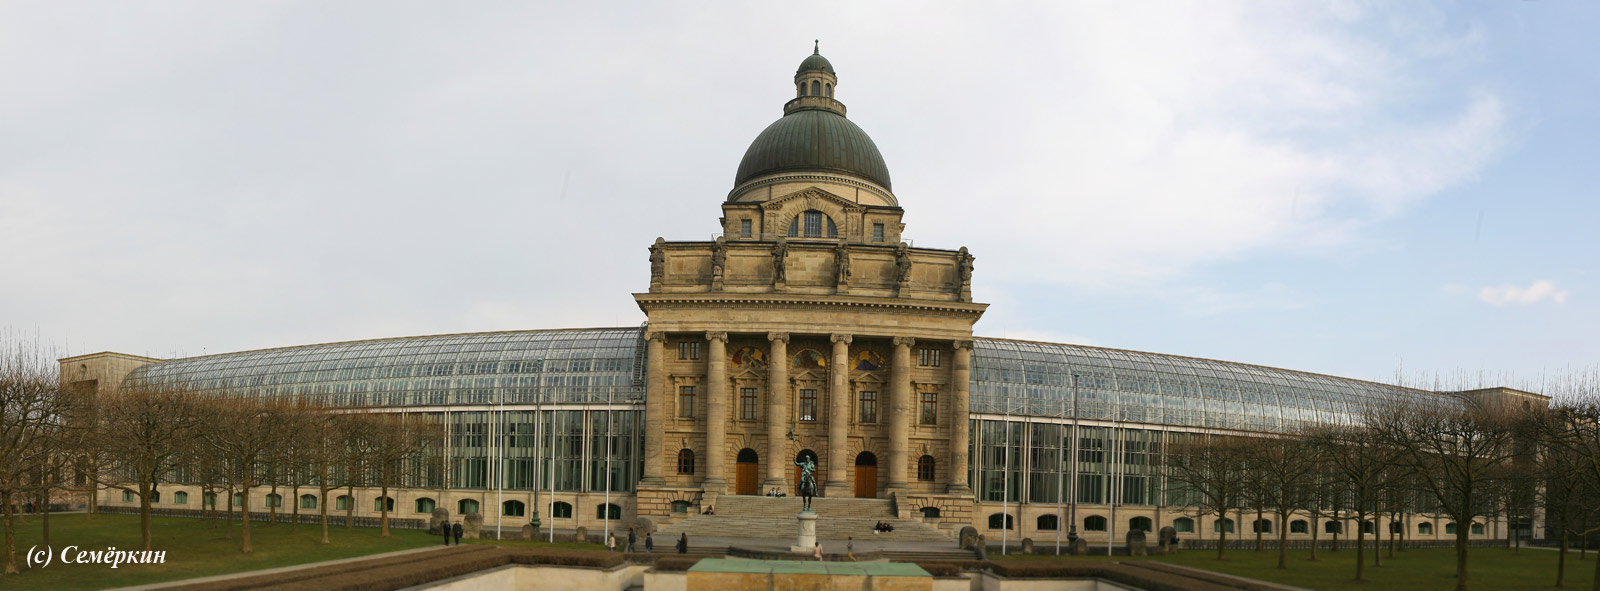 Мюнхен Достопримечательности - Мюнхенская резиденция Munchner Residenz